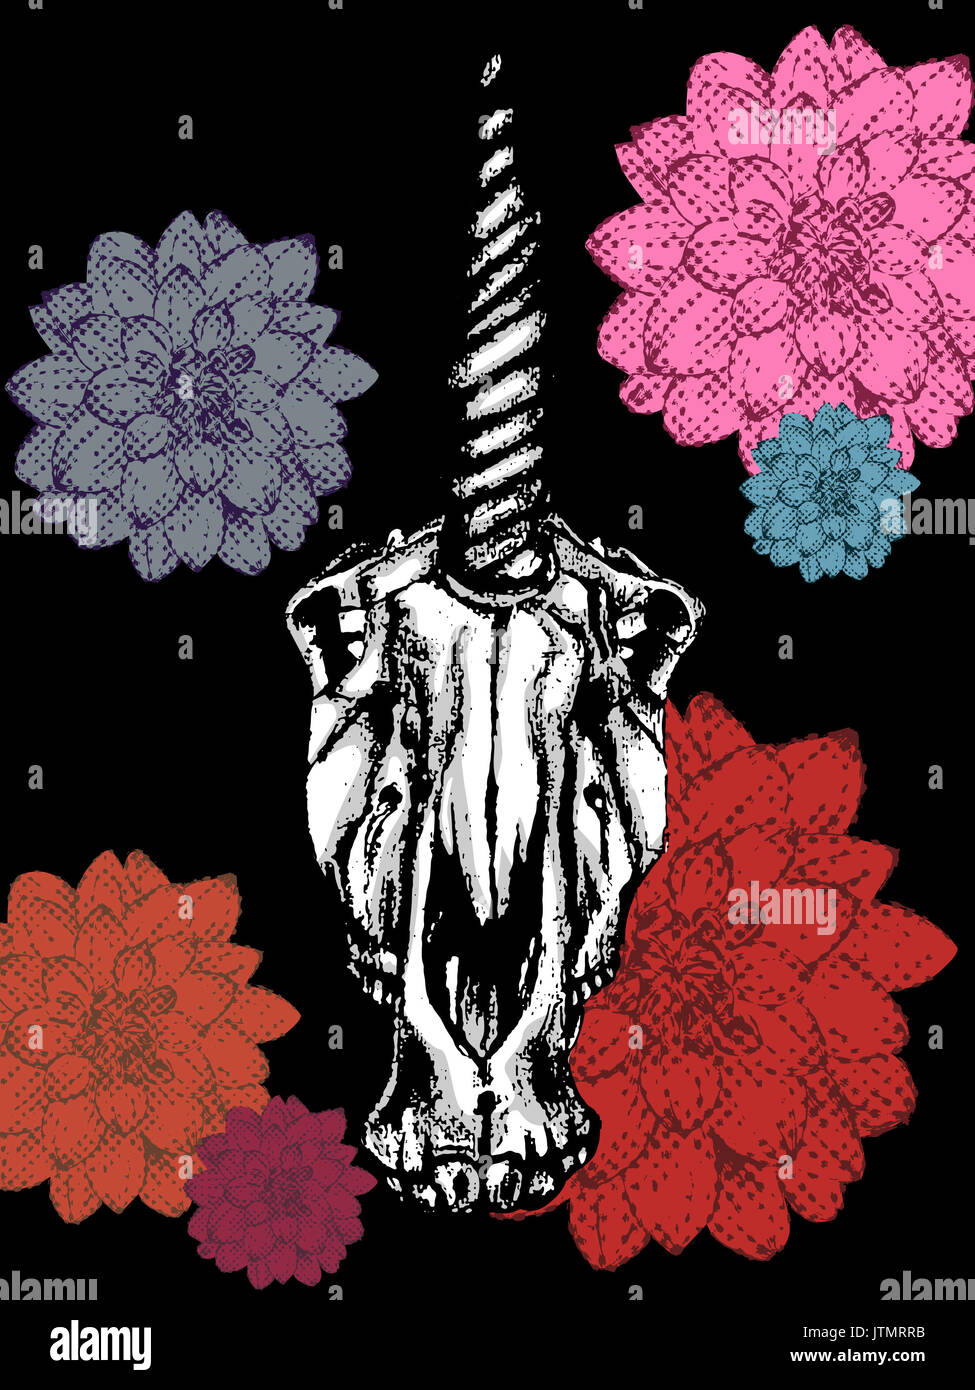 Vector illustration d'un crâne dessiné à la main et unicorn fleurs colorées sur fond noir Banque D'Images